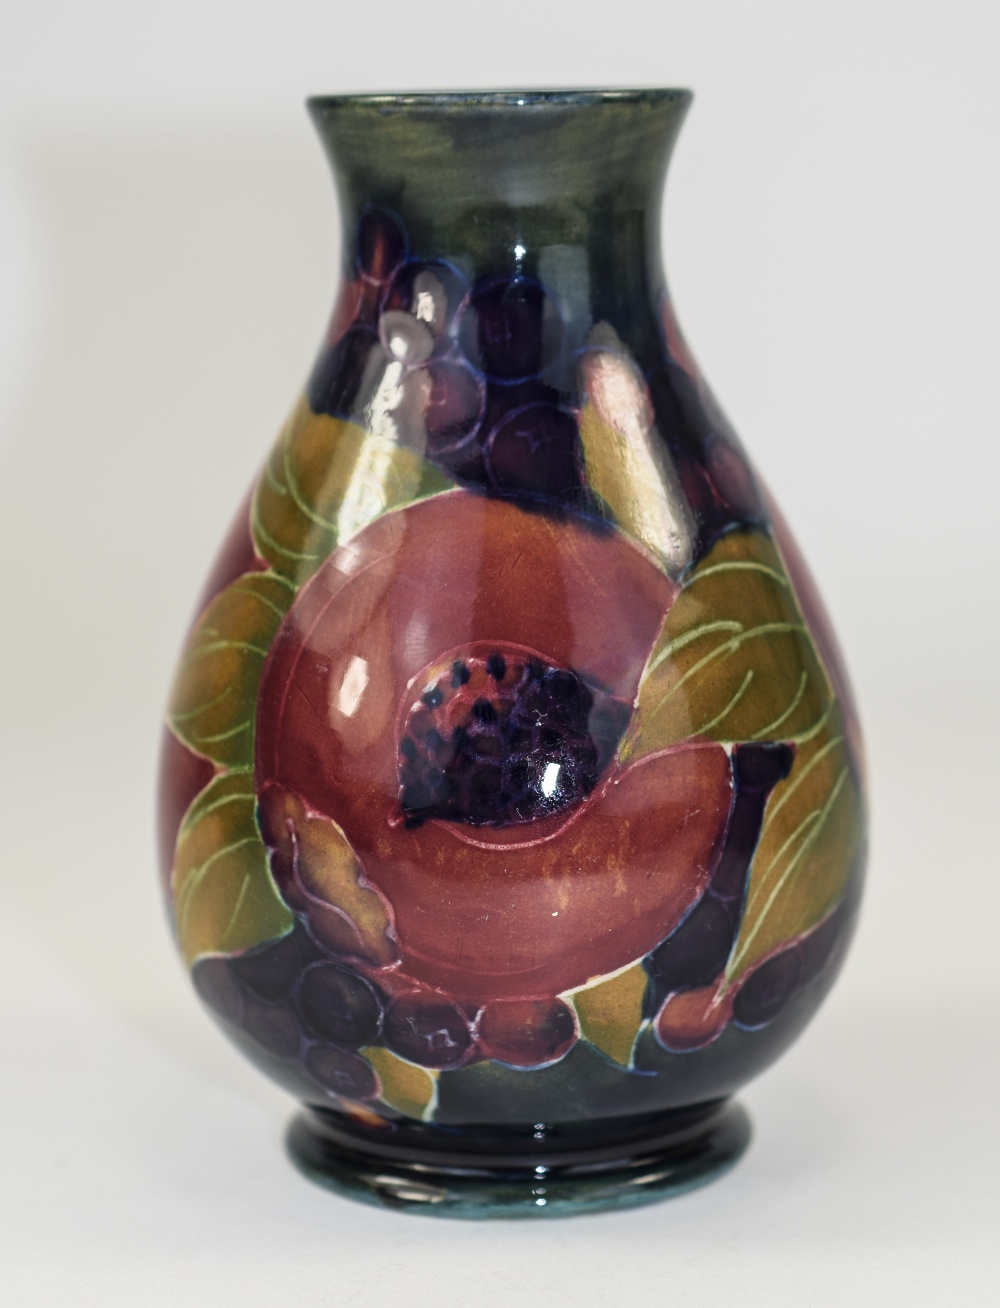 William Moorcroft Signed Globular Shaped Vase ' Ochre Pomegranate ' Design, Date 1914 - 1916. Signed